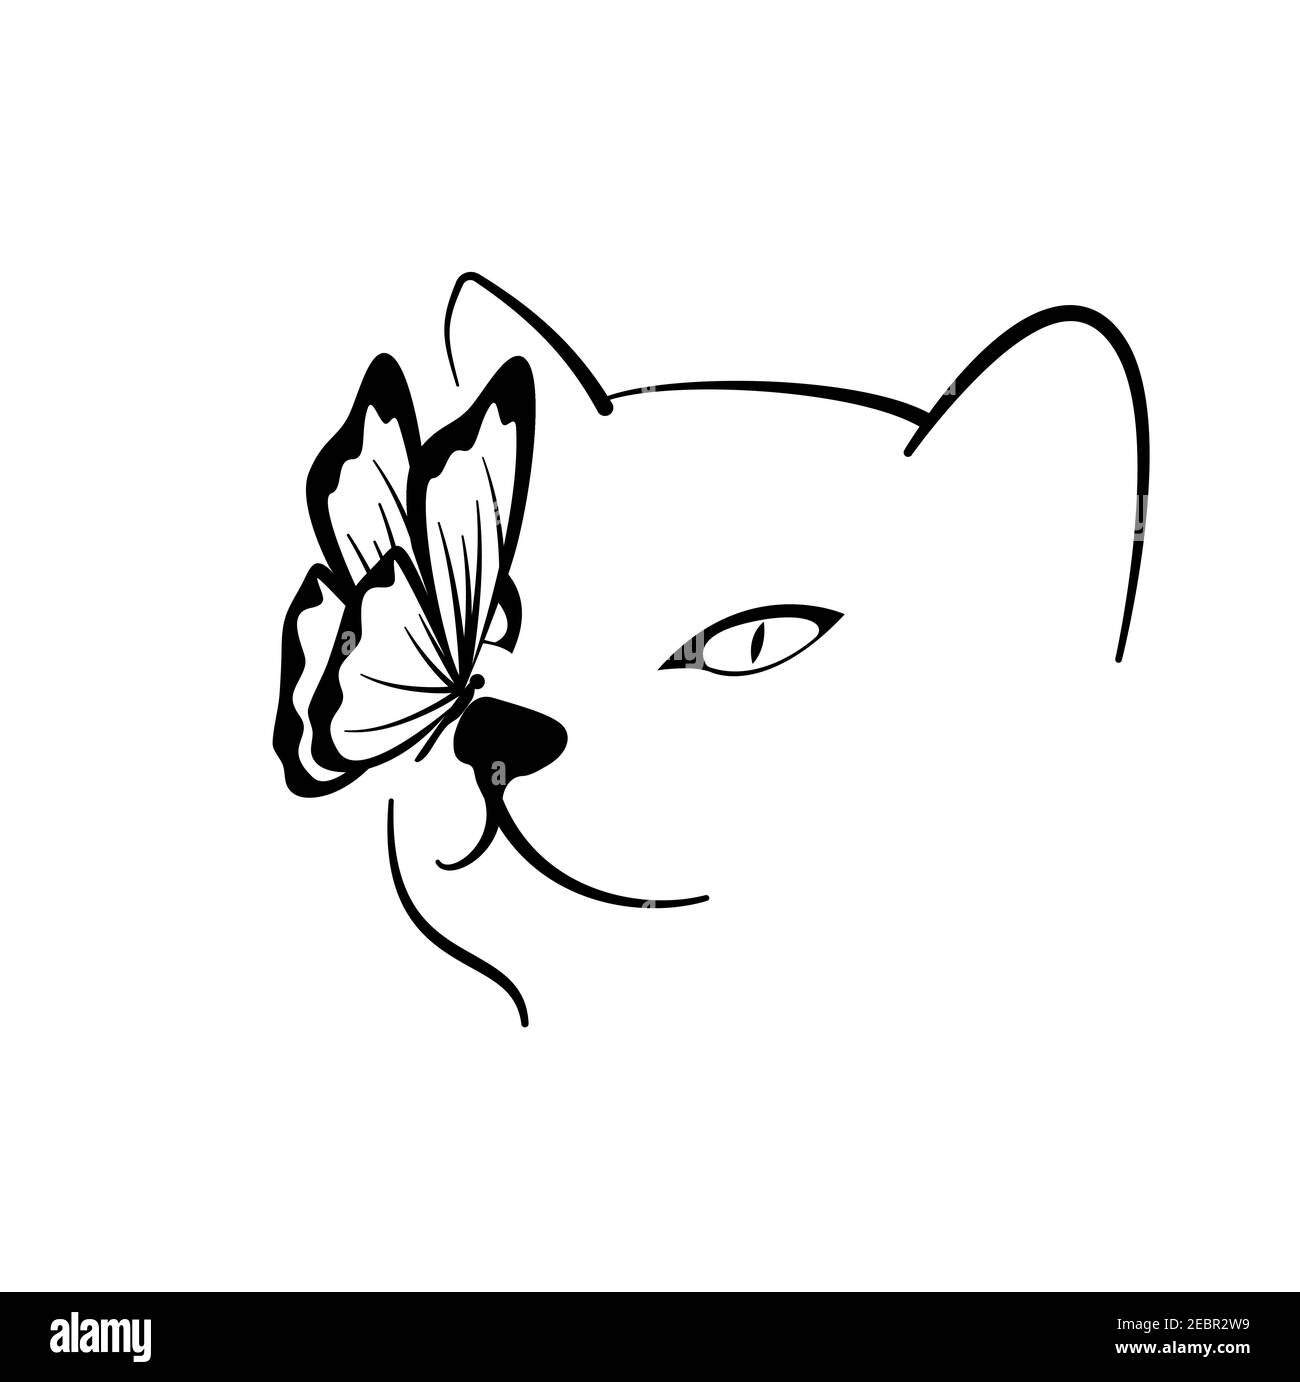 Straff Katze Vektor Vektor Linie Art auf einem weißen Hintergrund. Katzenportrait mit einem Schmetterling auf der Nase. Vektor für Logos, Kunsthandwerk, Drucke. Stock Vektor